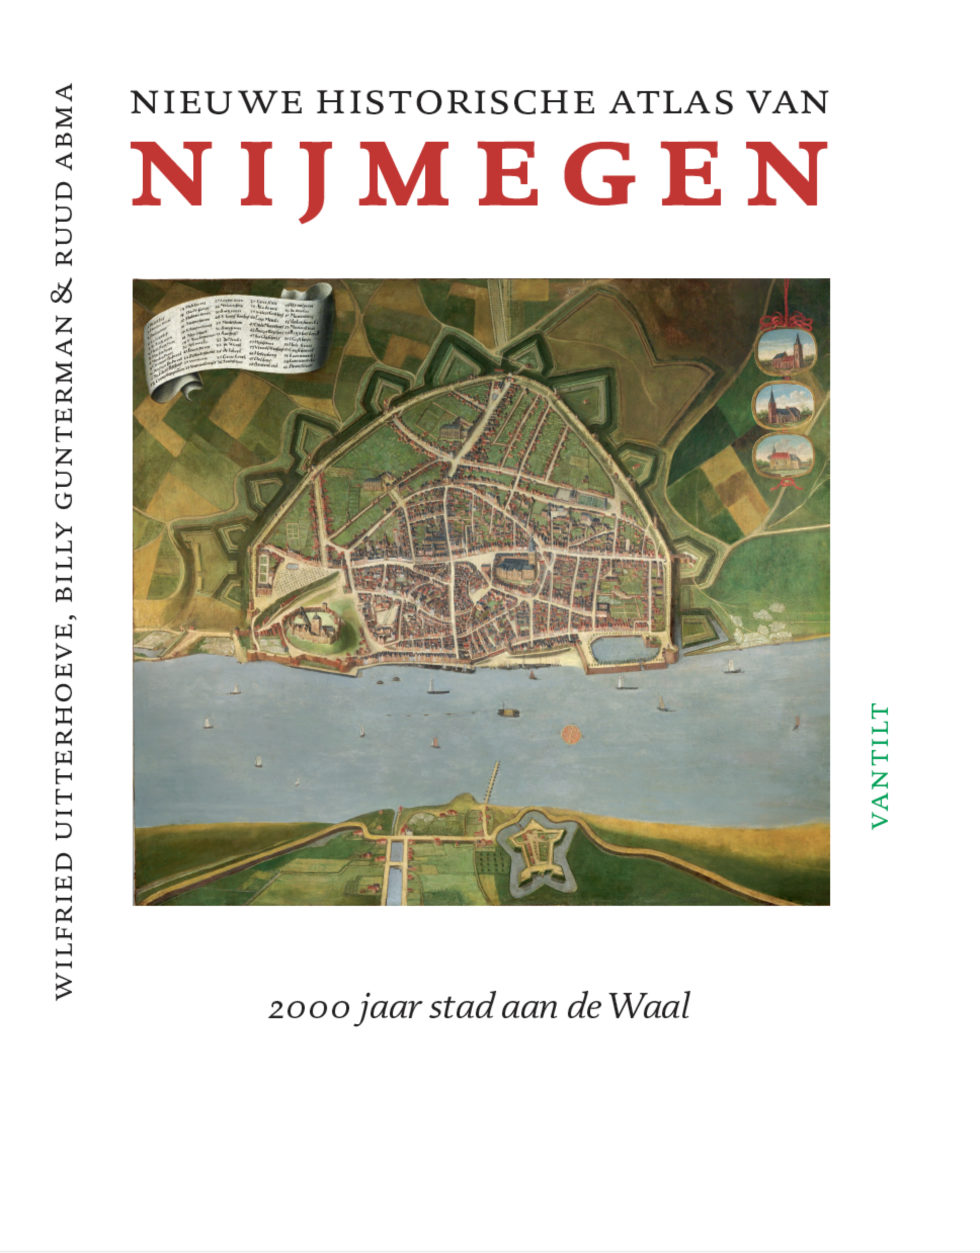 Omslag van de Nieuwe Historische Atlas van Nijmegen